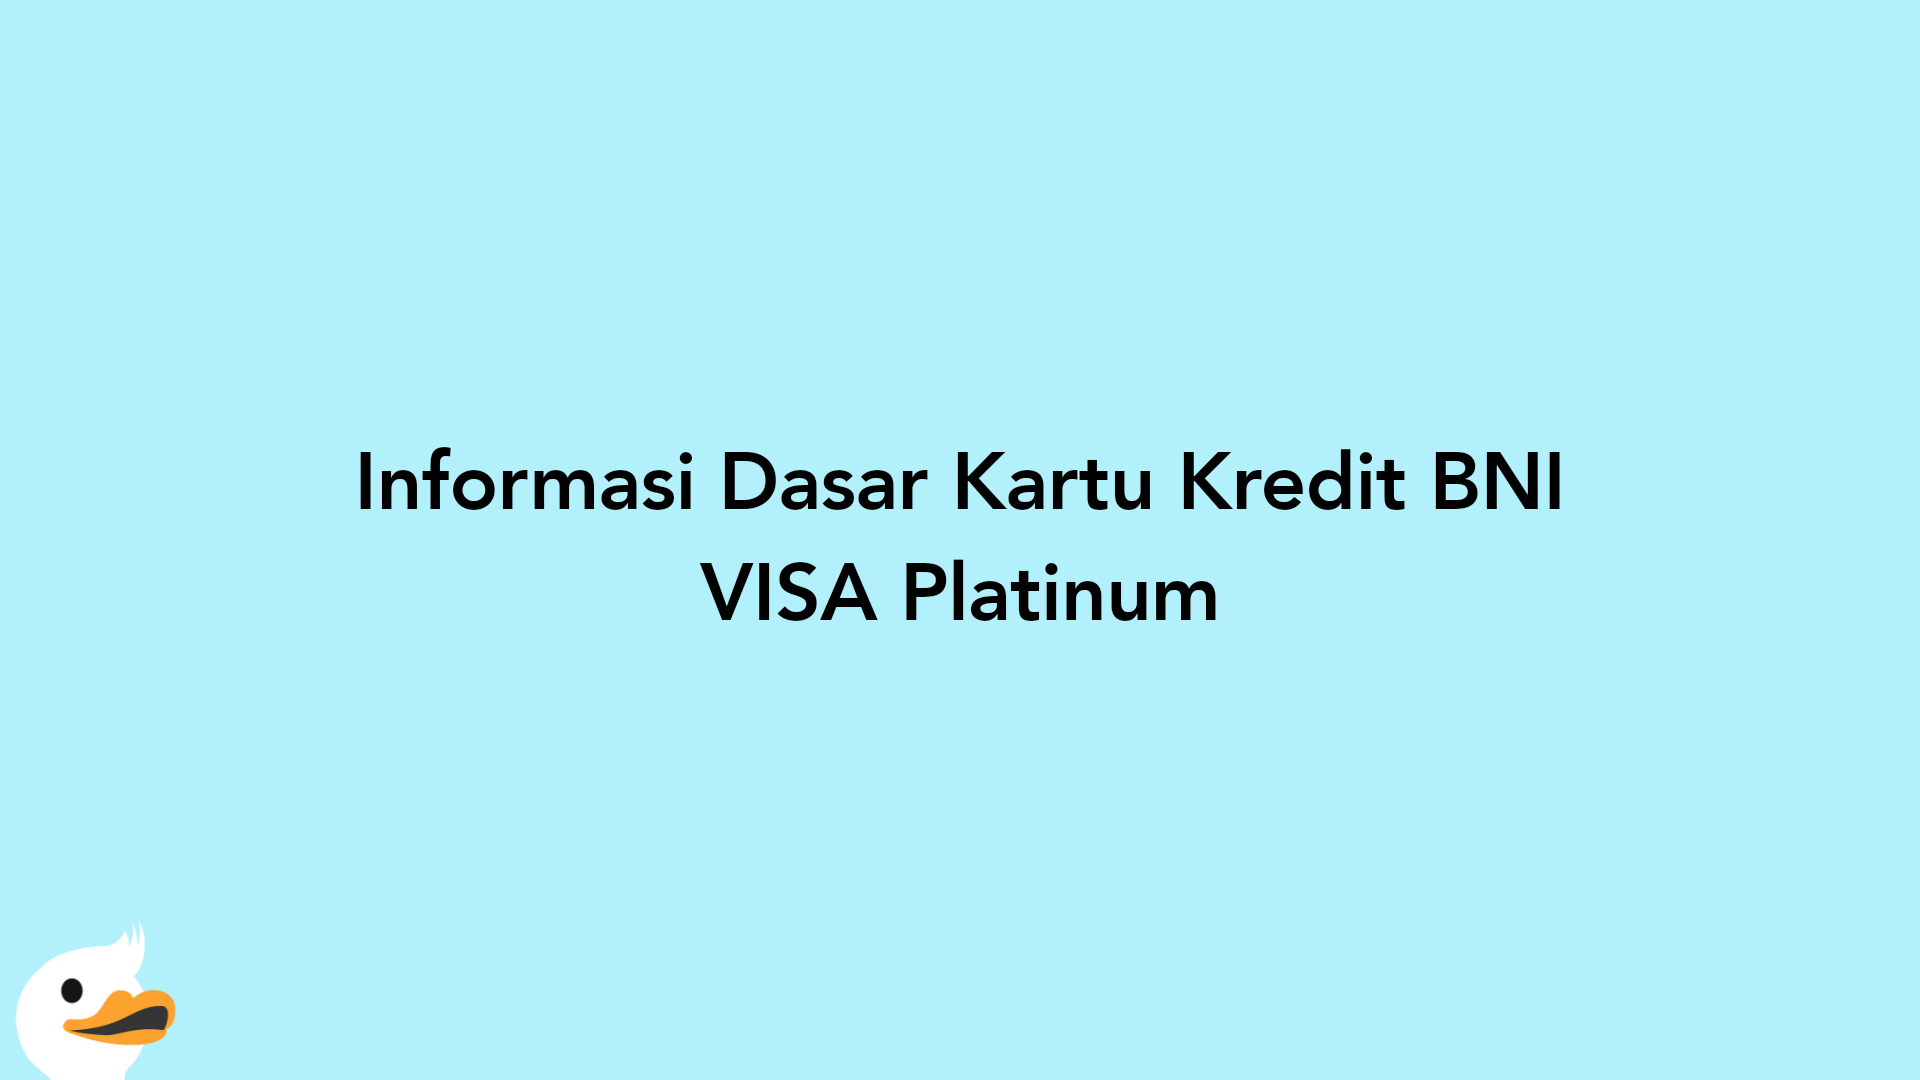 Informasi Dasar Kartu Kredit BNI VISA Platinum